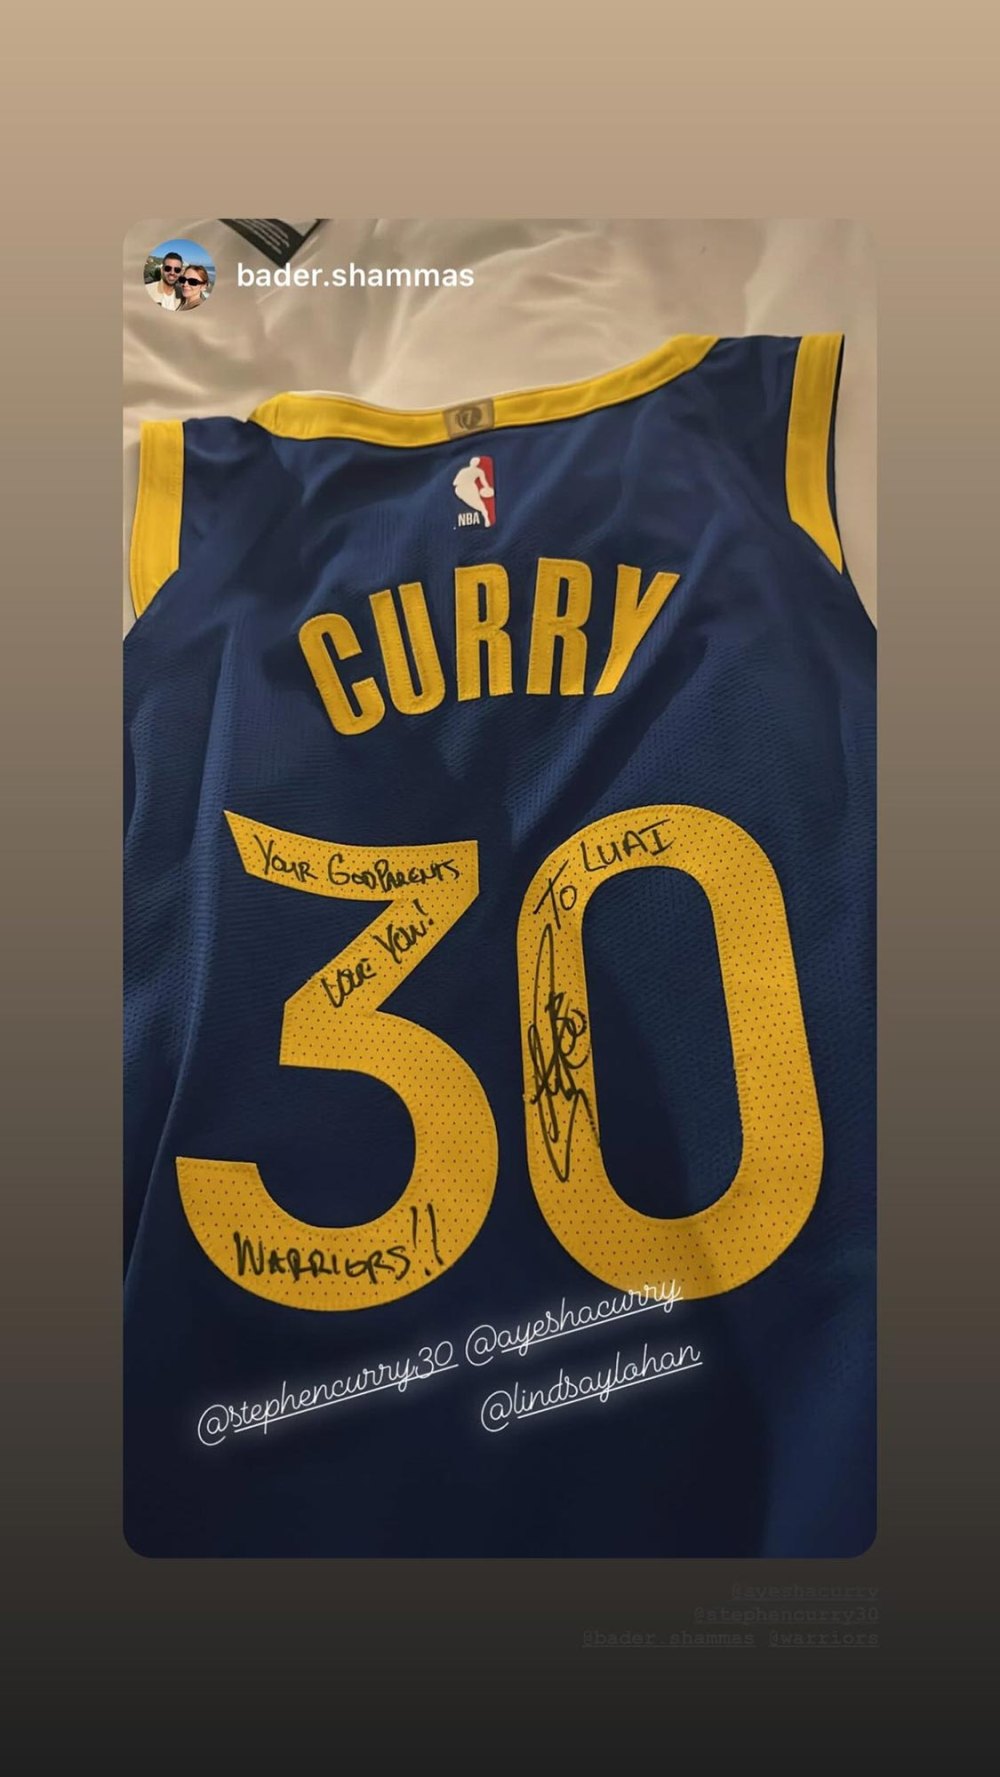 Steph Curry und Lindsay Lohan haben beim Spiel der Golden State Warriors ein nettes Zusammenspiel